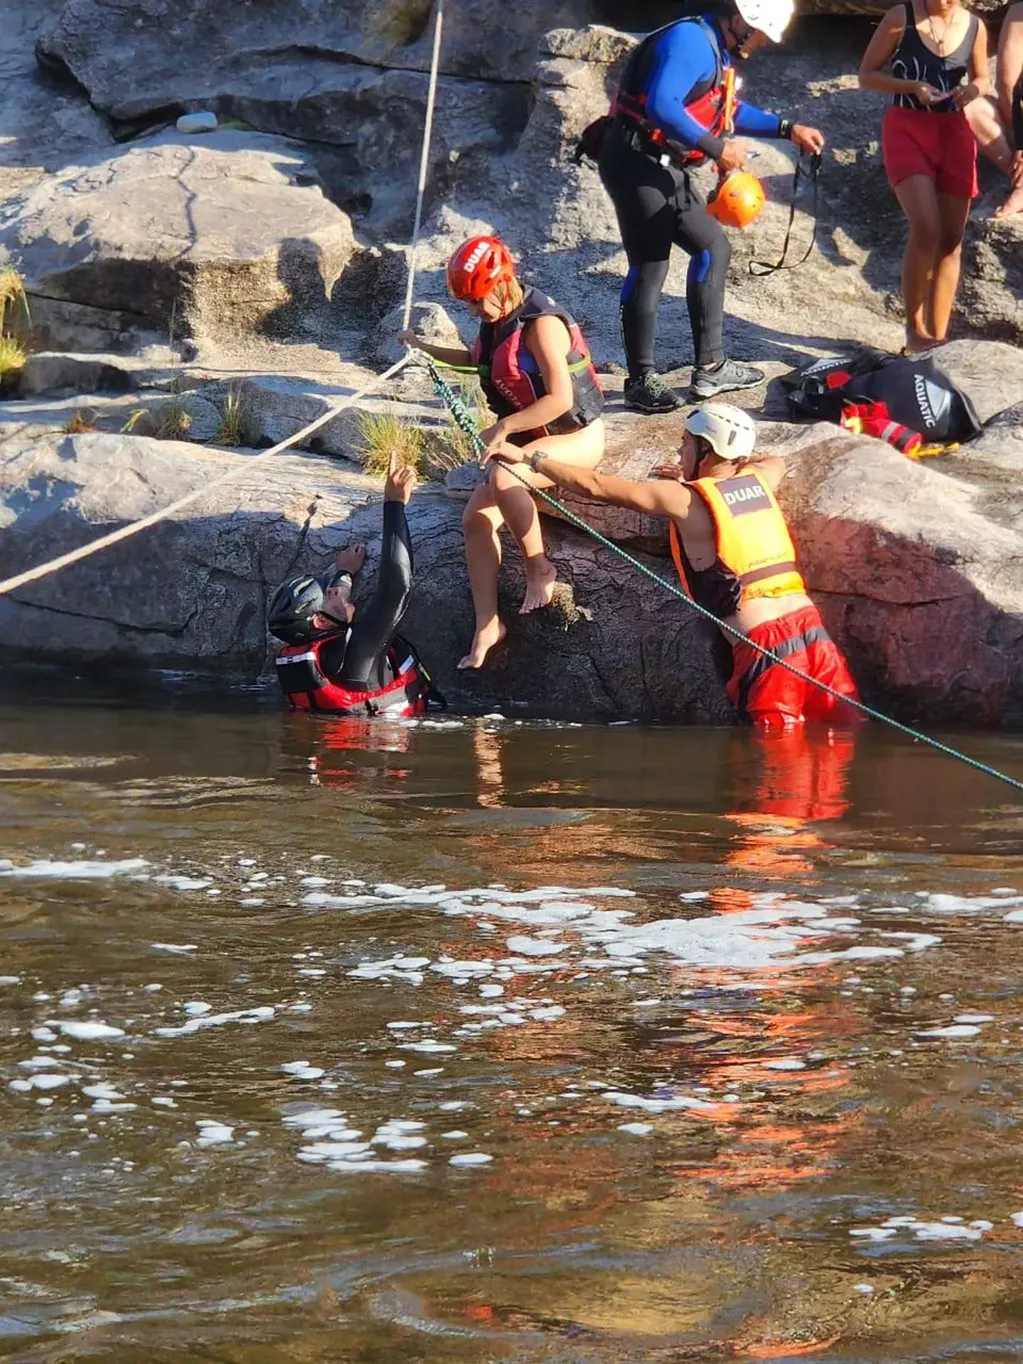 Las personas debieron cruzar el río sujetados a una soga y protegidos por un chaleco salvavidas.